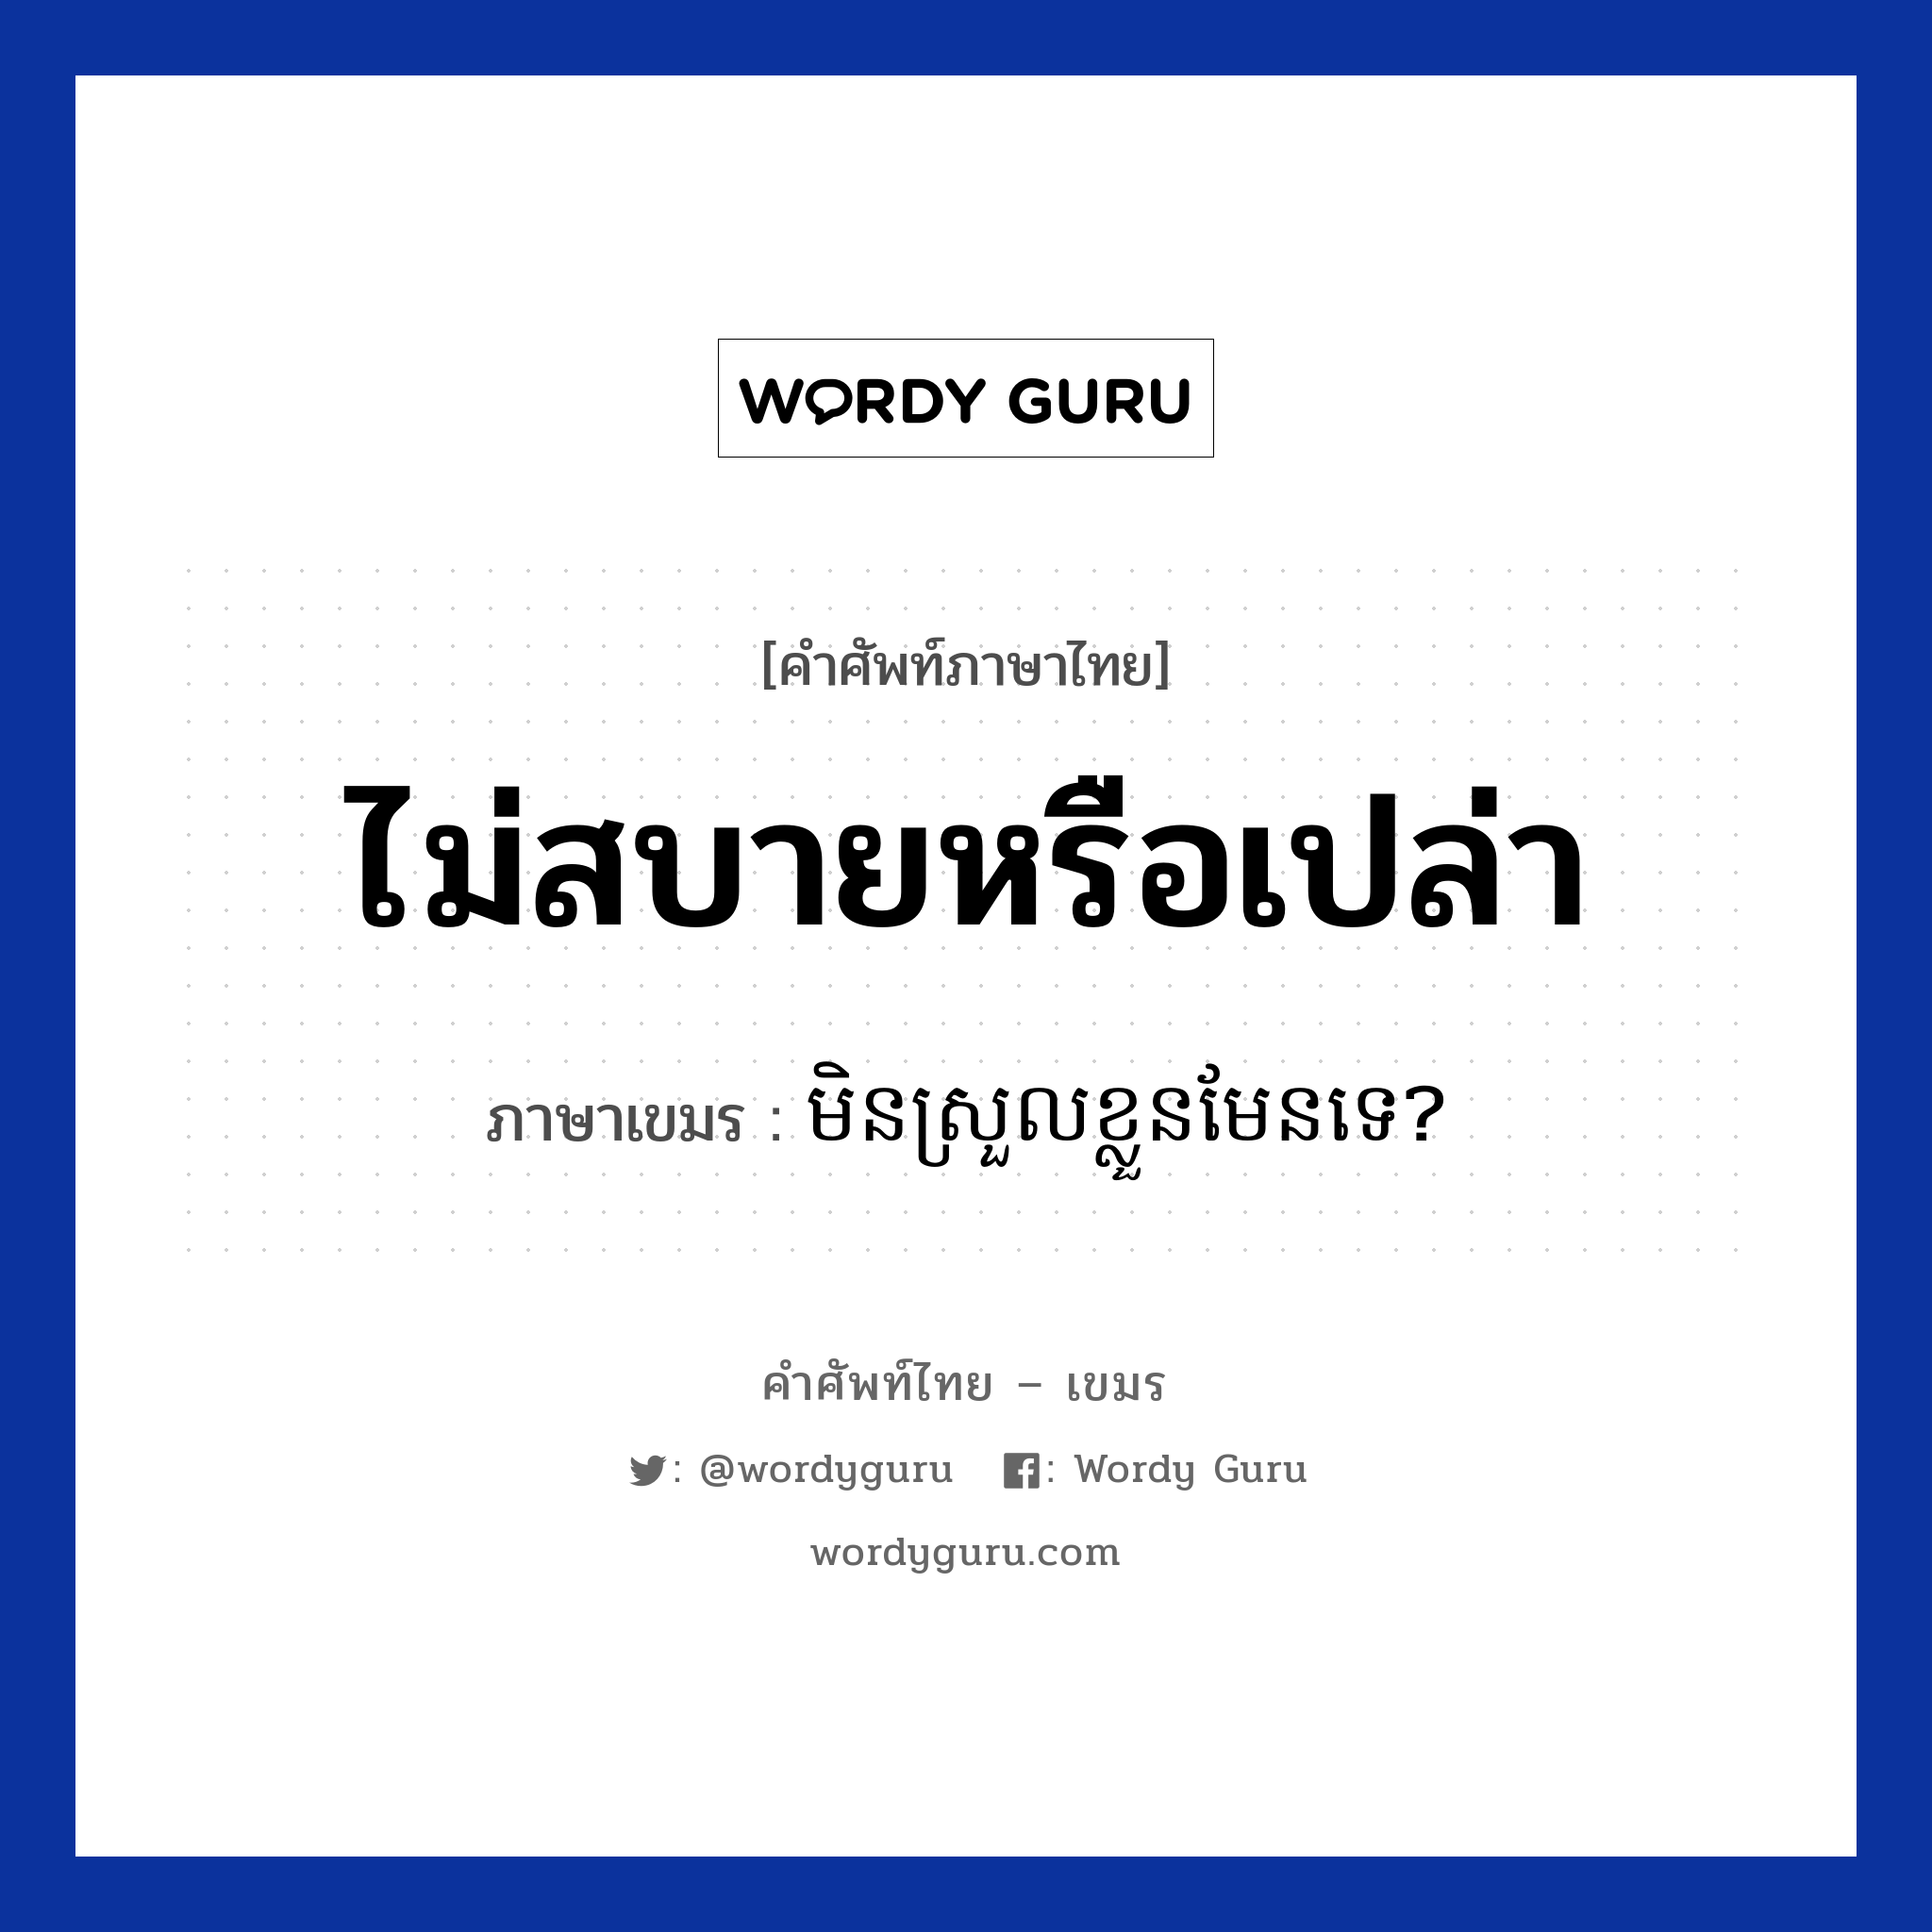 ไม่สบายหรือเปล่า ภาษาเขมรคืออะไร, คำศัพท์ภาษาไทย - เขมร ไม่สบายหรือเปล่า ภาษาเขมร មិនស្រួលខ្លួនមែនទេ? หมวด สุขภาพ Men sroul kloun men te? หมวด สุขภาพ